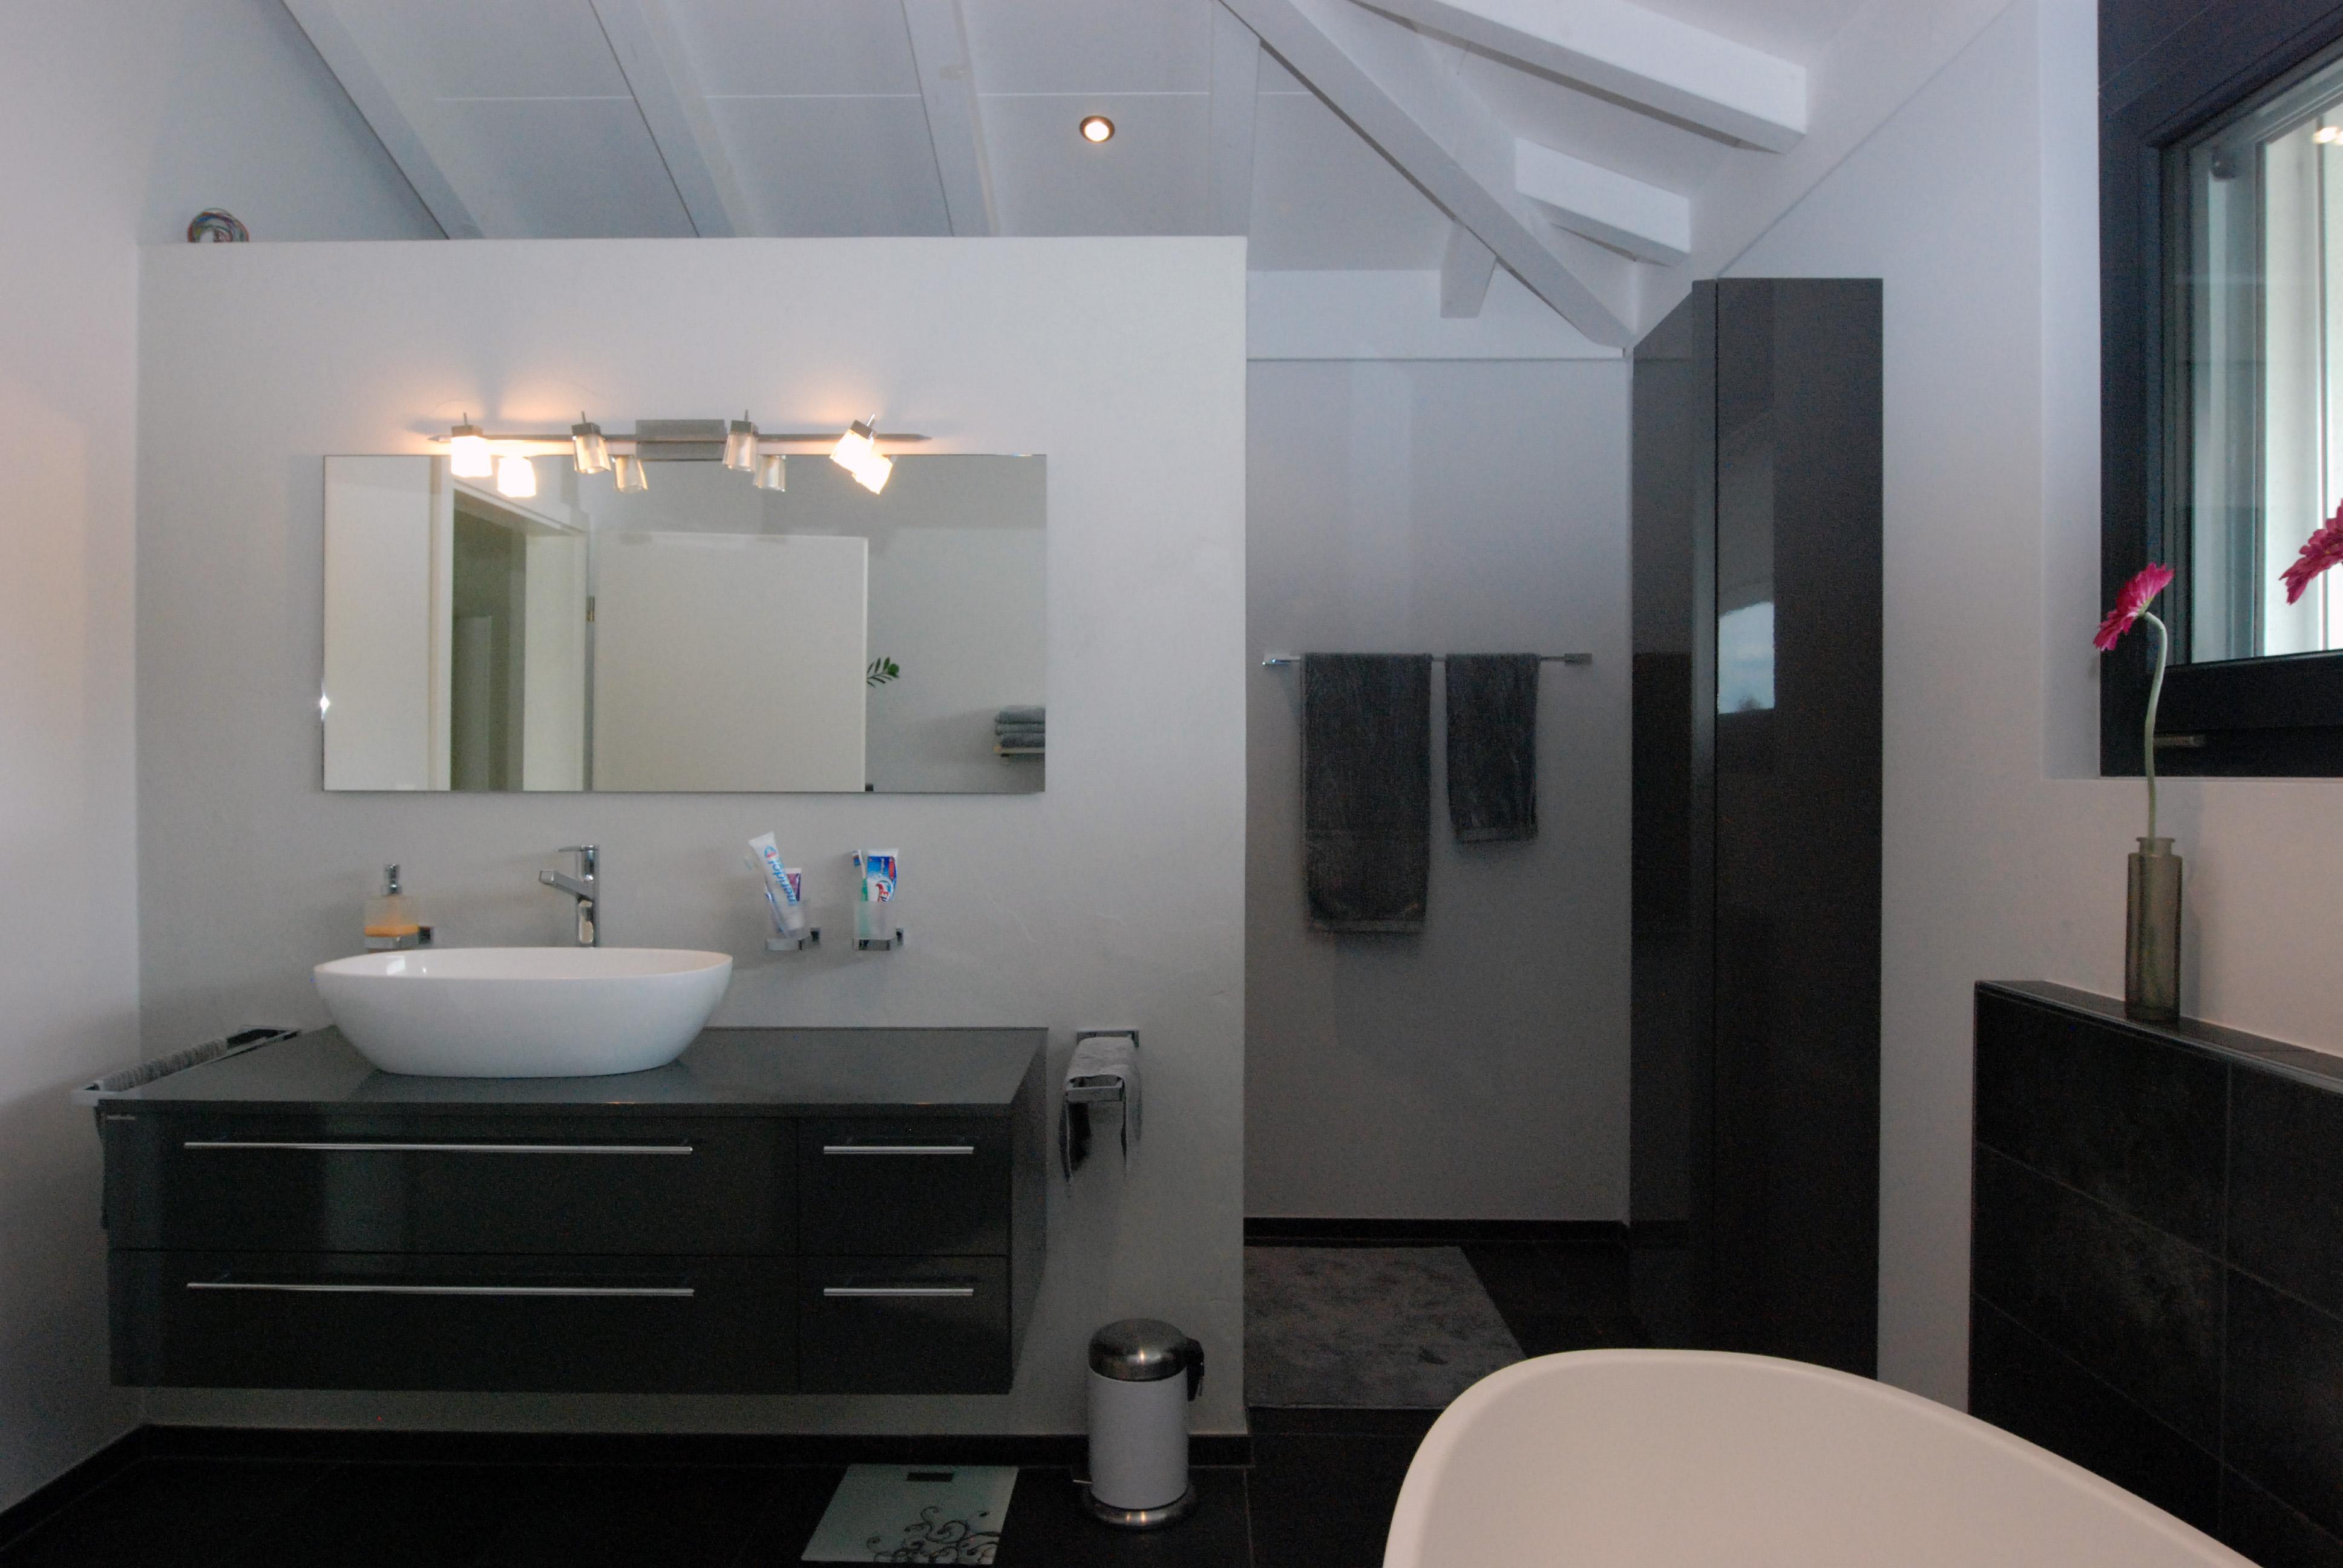  Modernes Bad im schwarz-weiss Design im Multimedia Haus in Kraeiligen